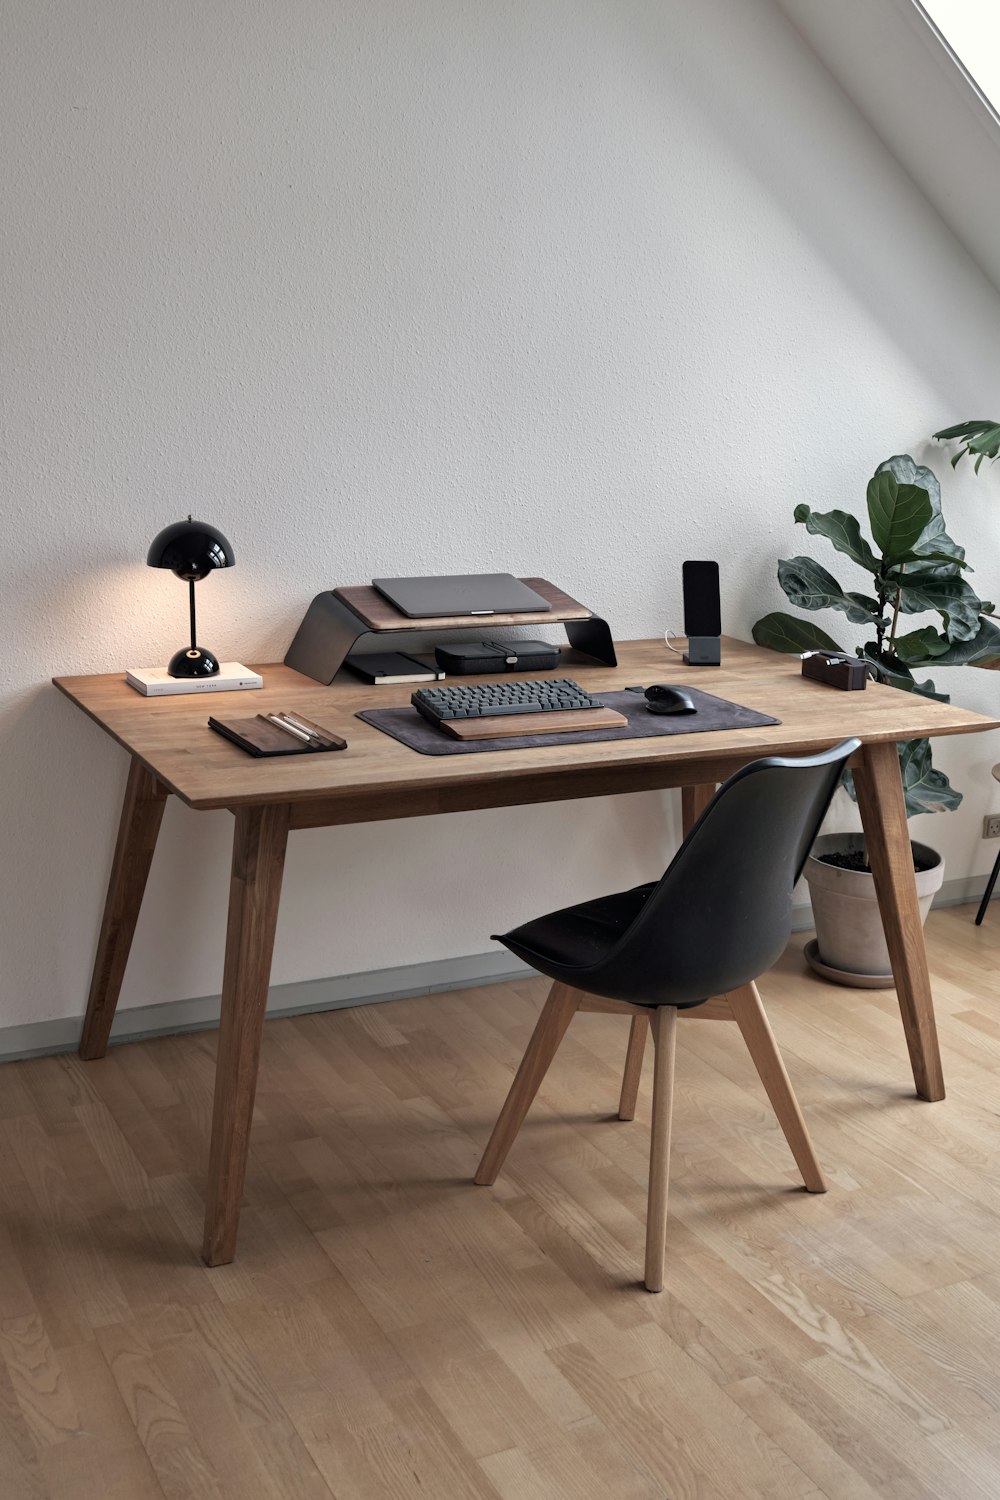 컴퓨터와 의자가 있는 책상